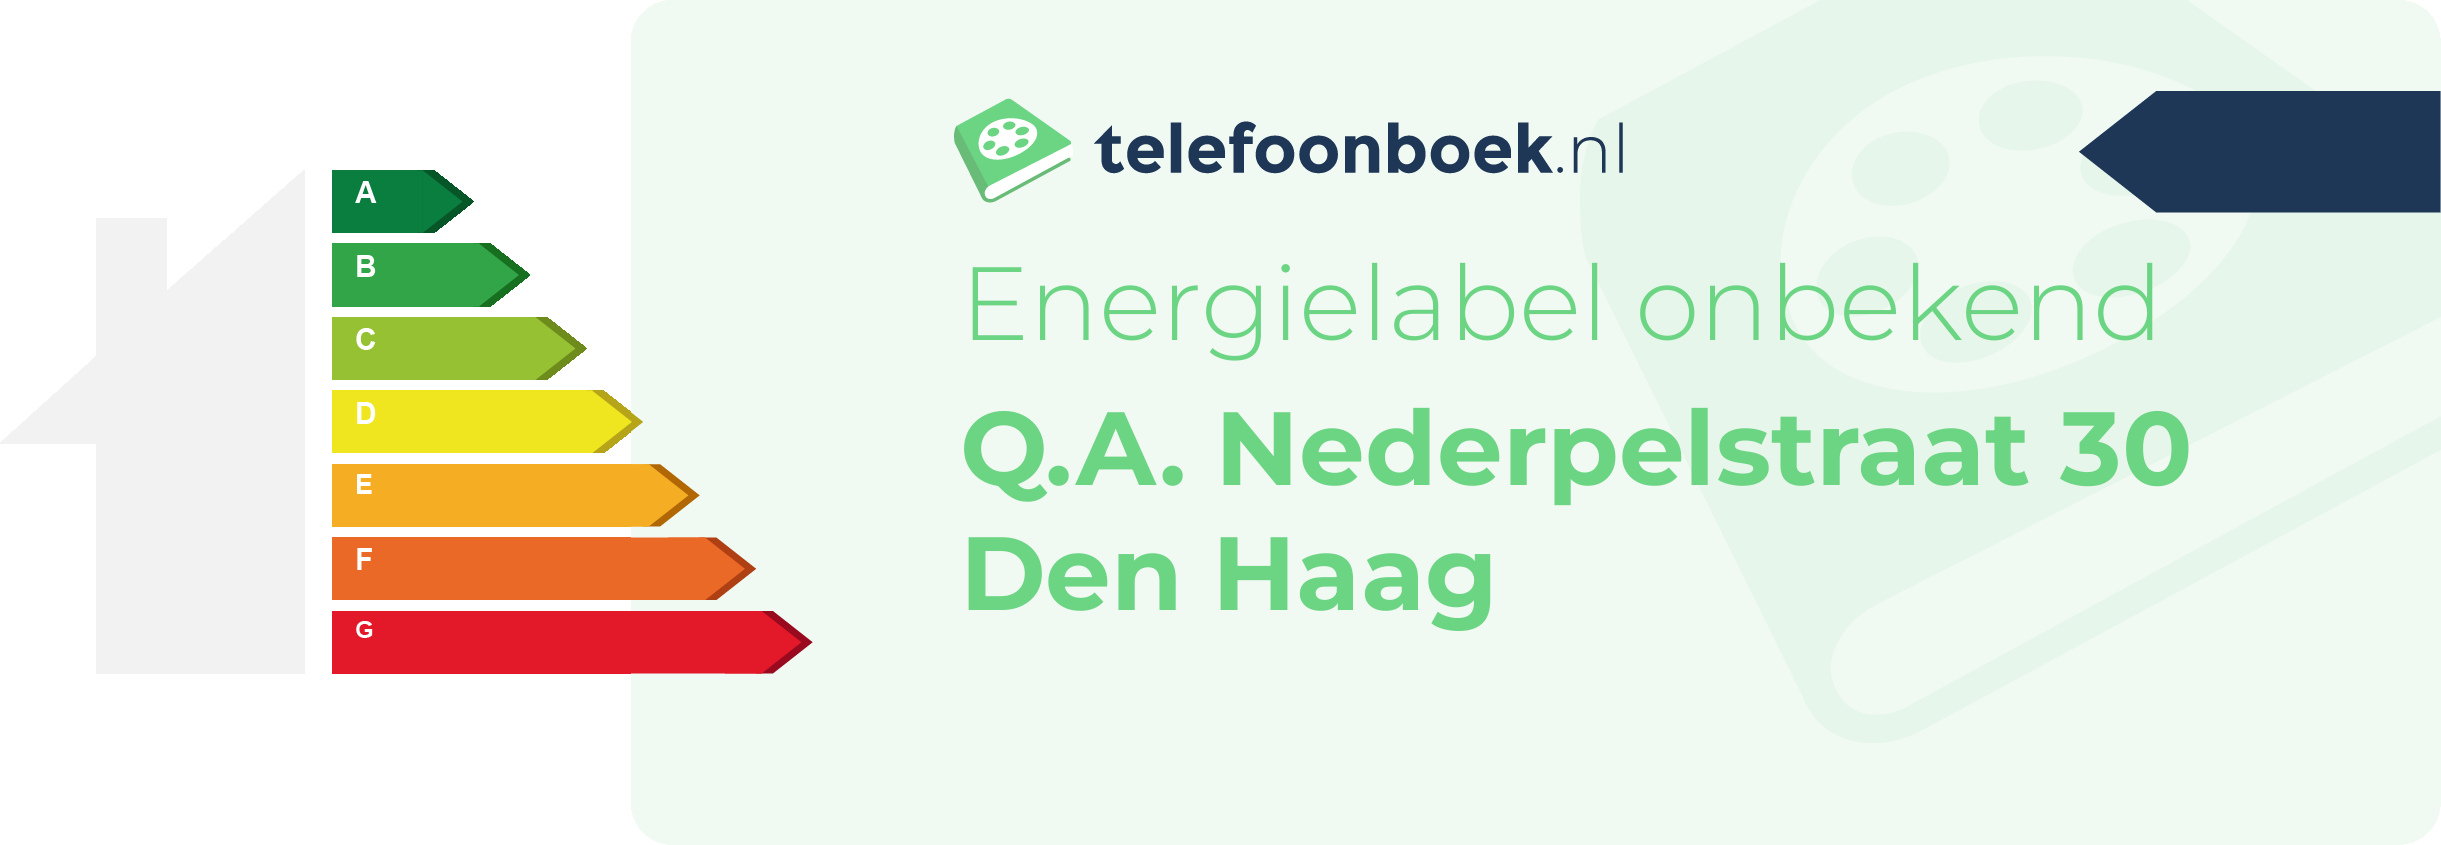 Energielabel Q.A. Nederpelstraat 30 Den Haag